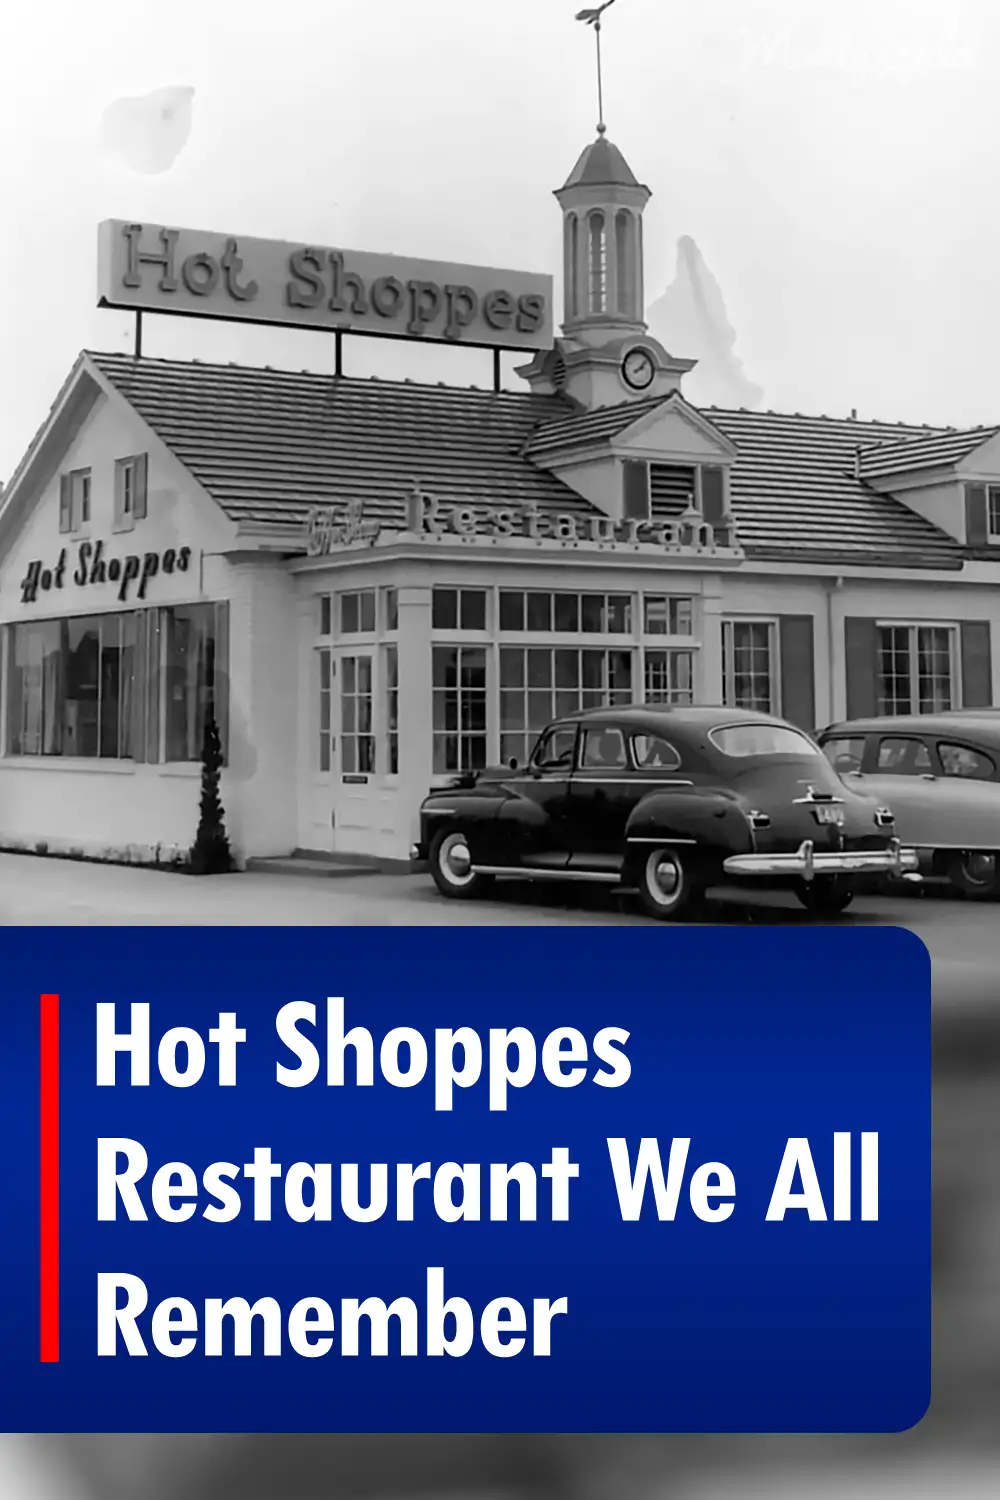 Hot Shoppes Restaurant We All Remember